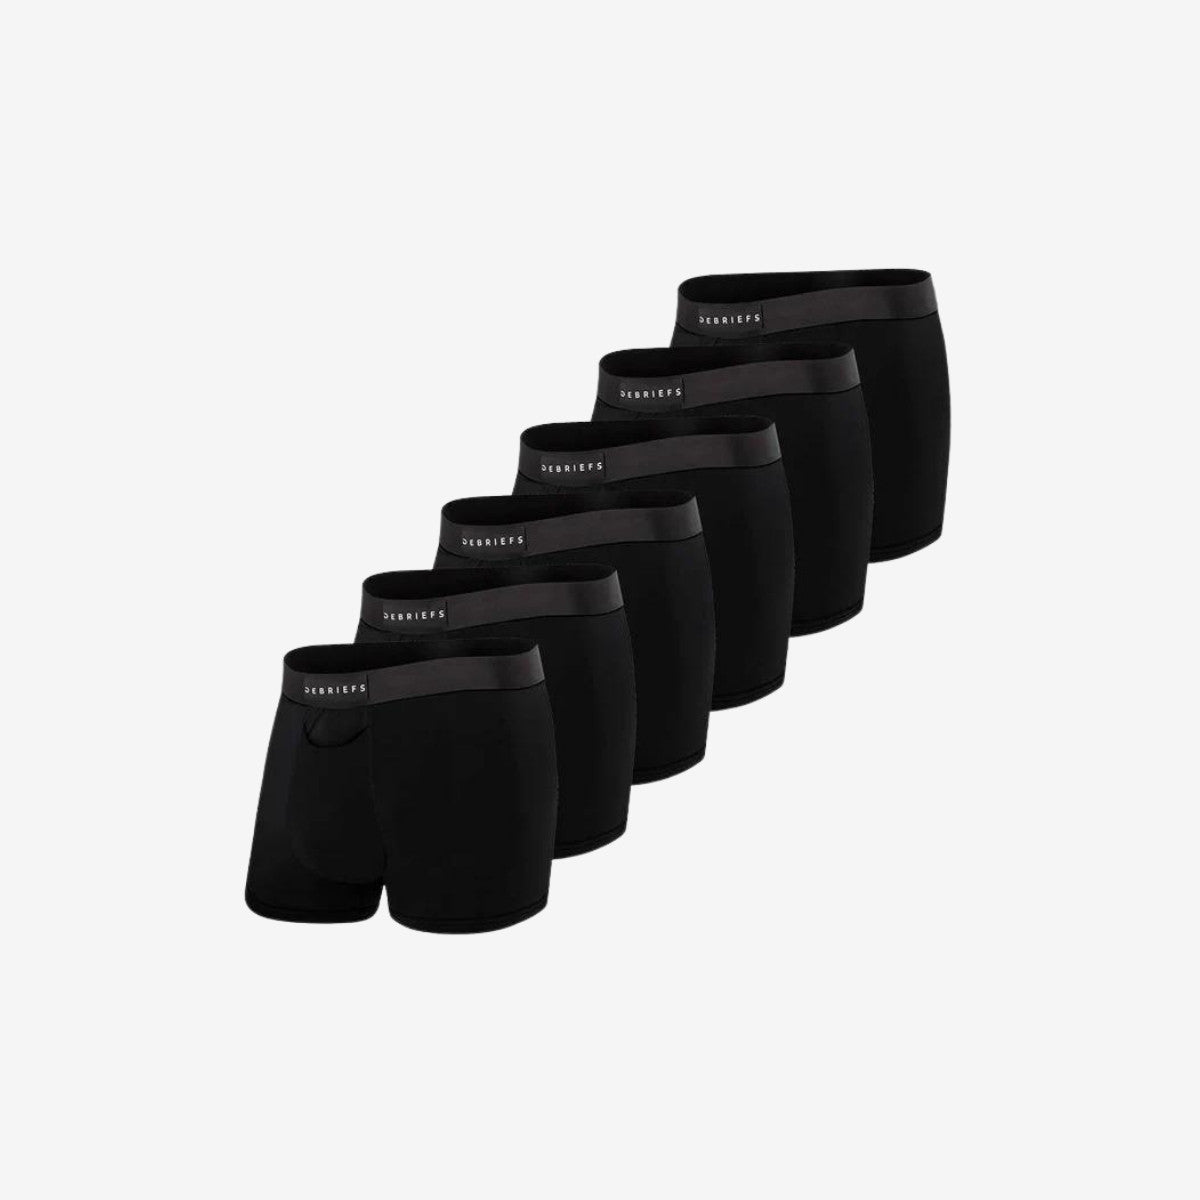 Debriefs men's underwear online trunks 6 pack - Black